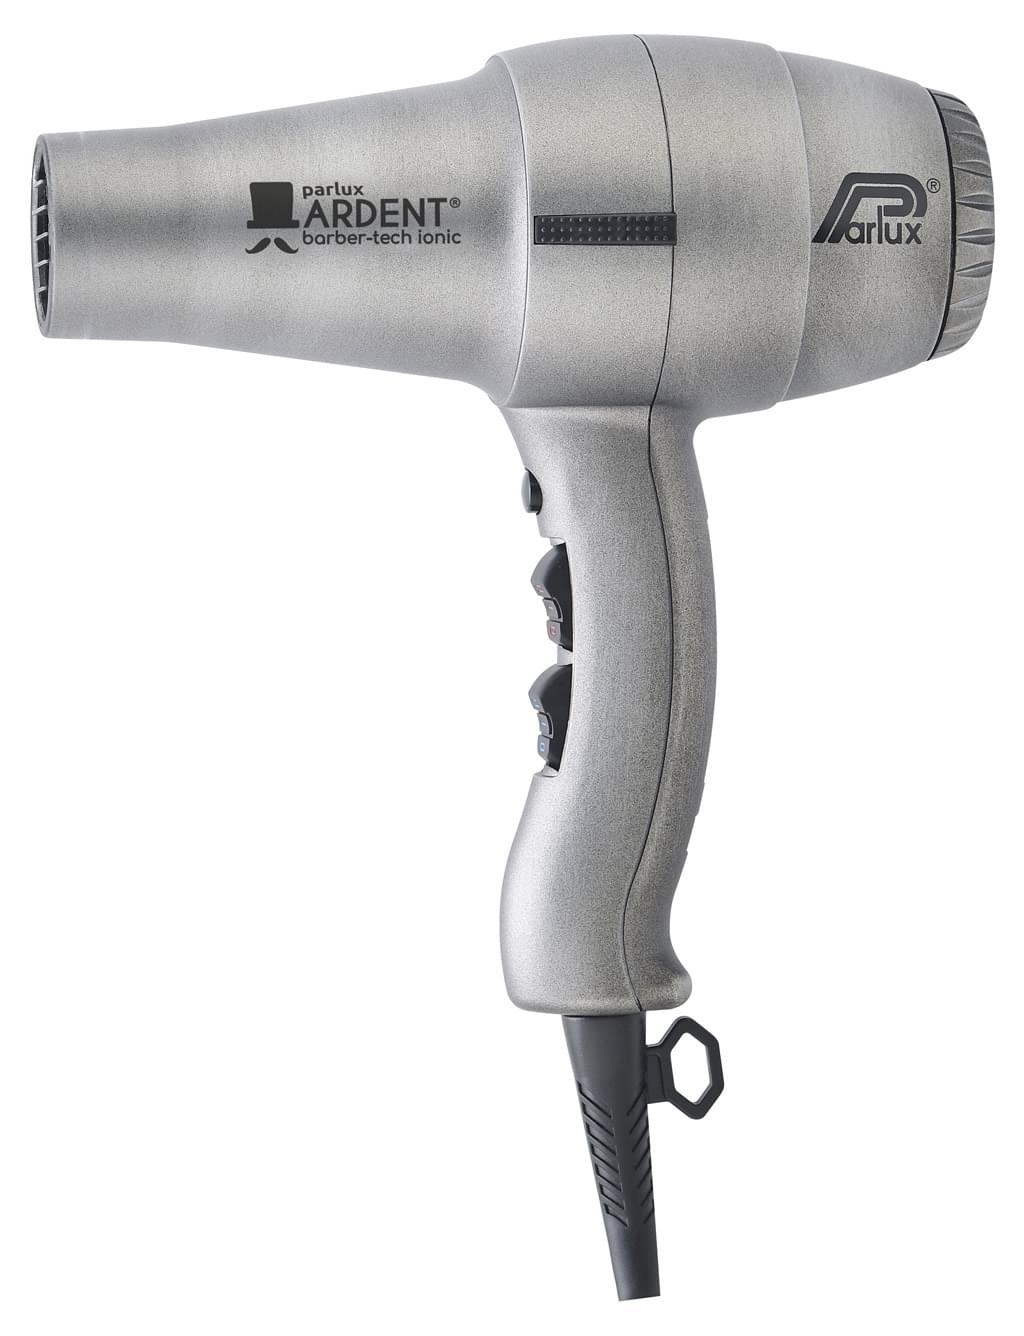 PARLUX Ardent barber-tech ionic professzionális hajszárító 1800 W